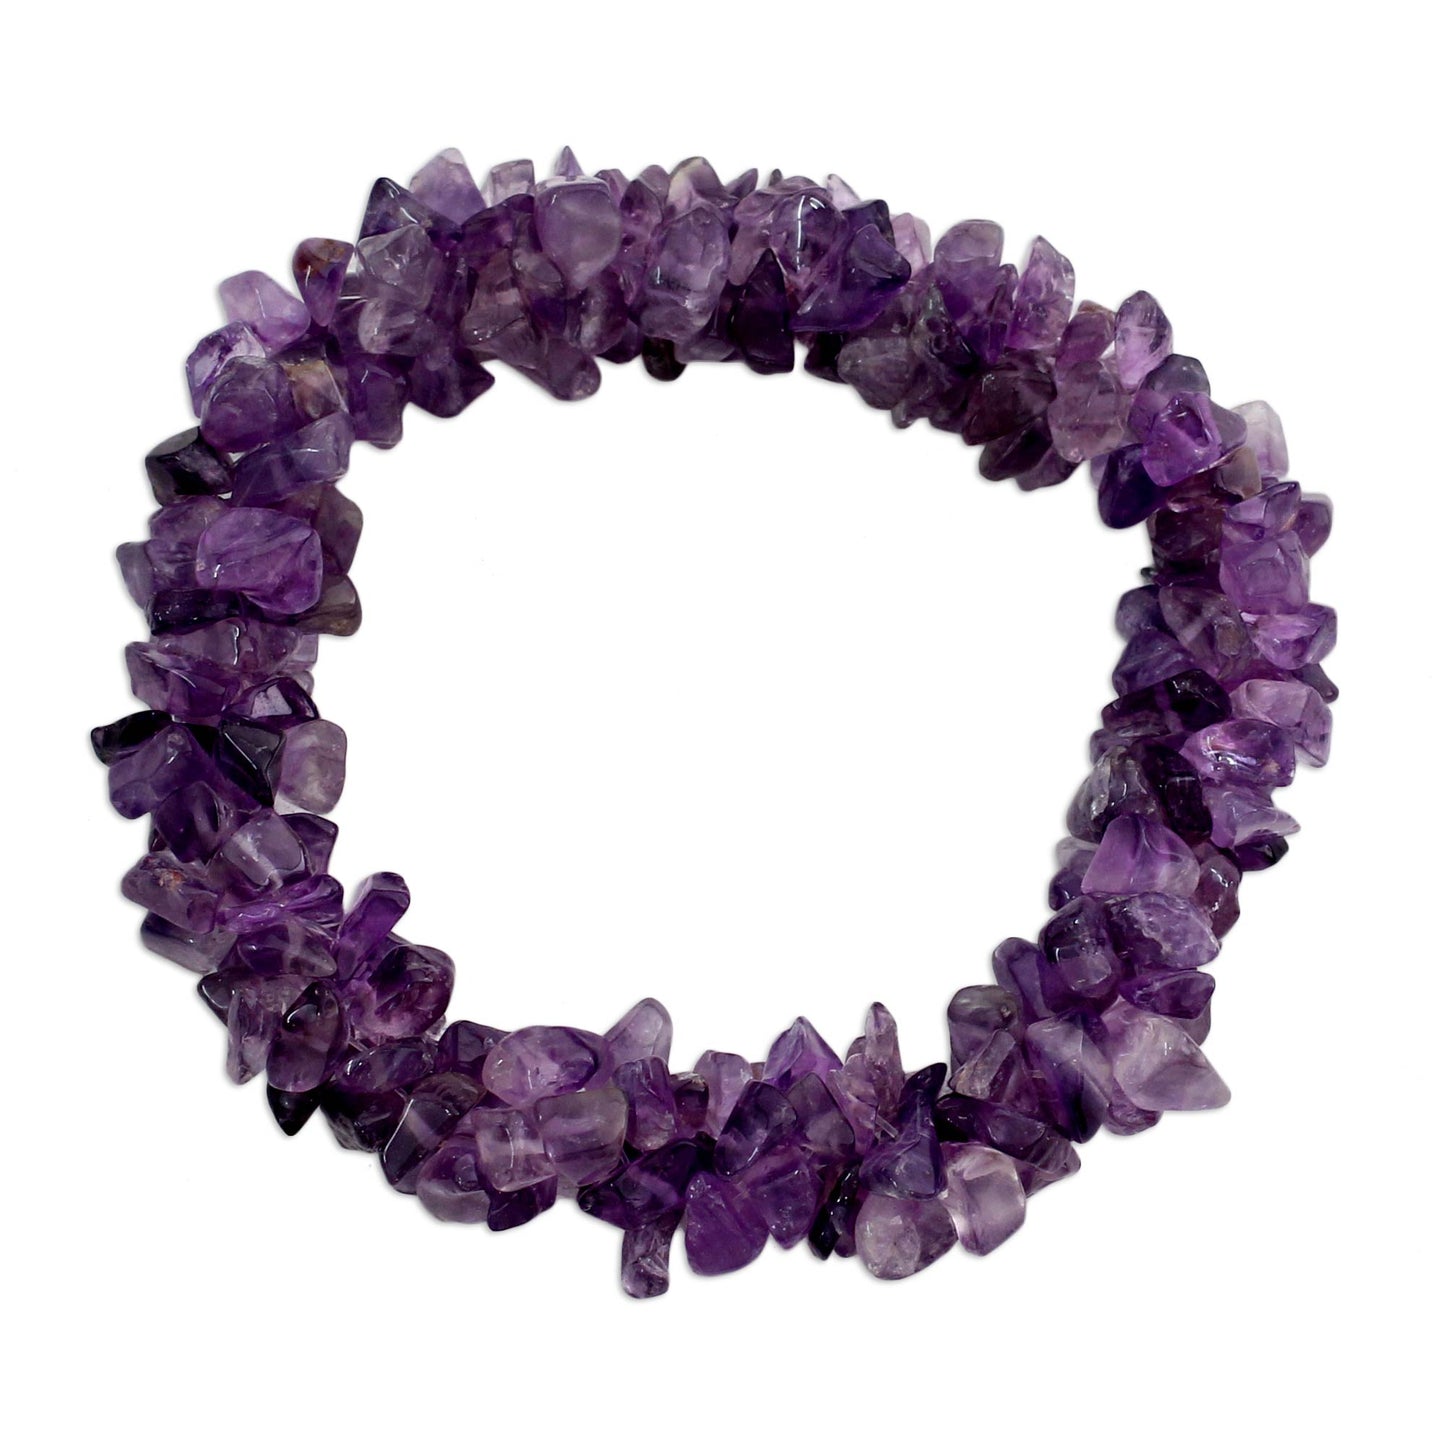 Lilac Muse Amethyst Stretch Bracelet